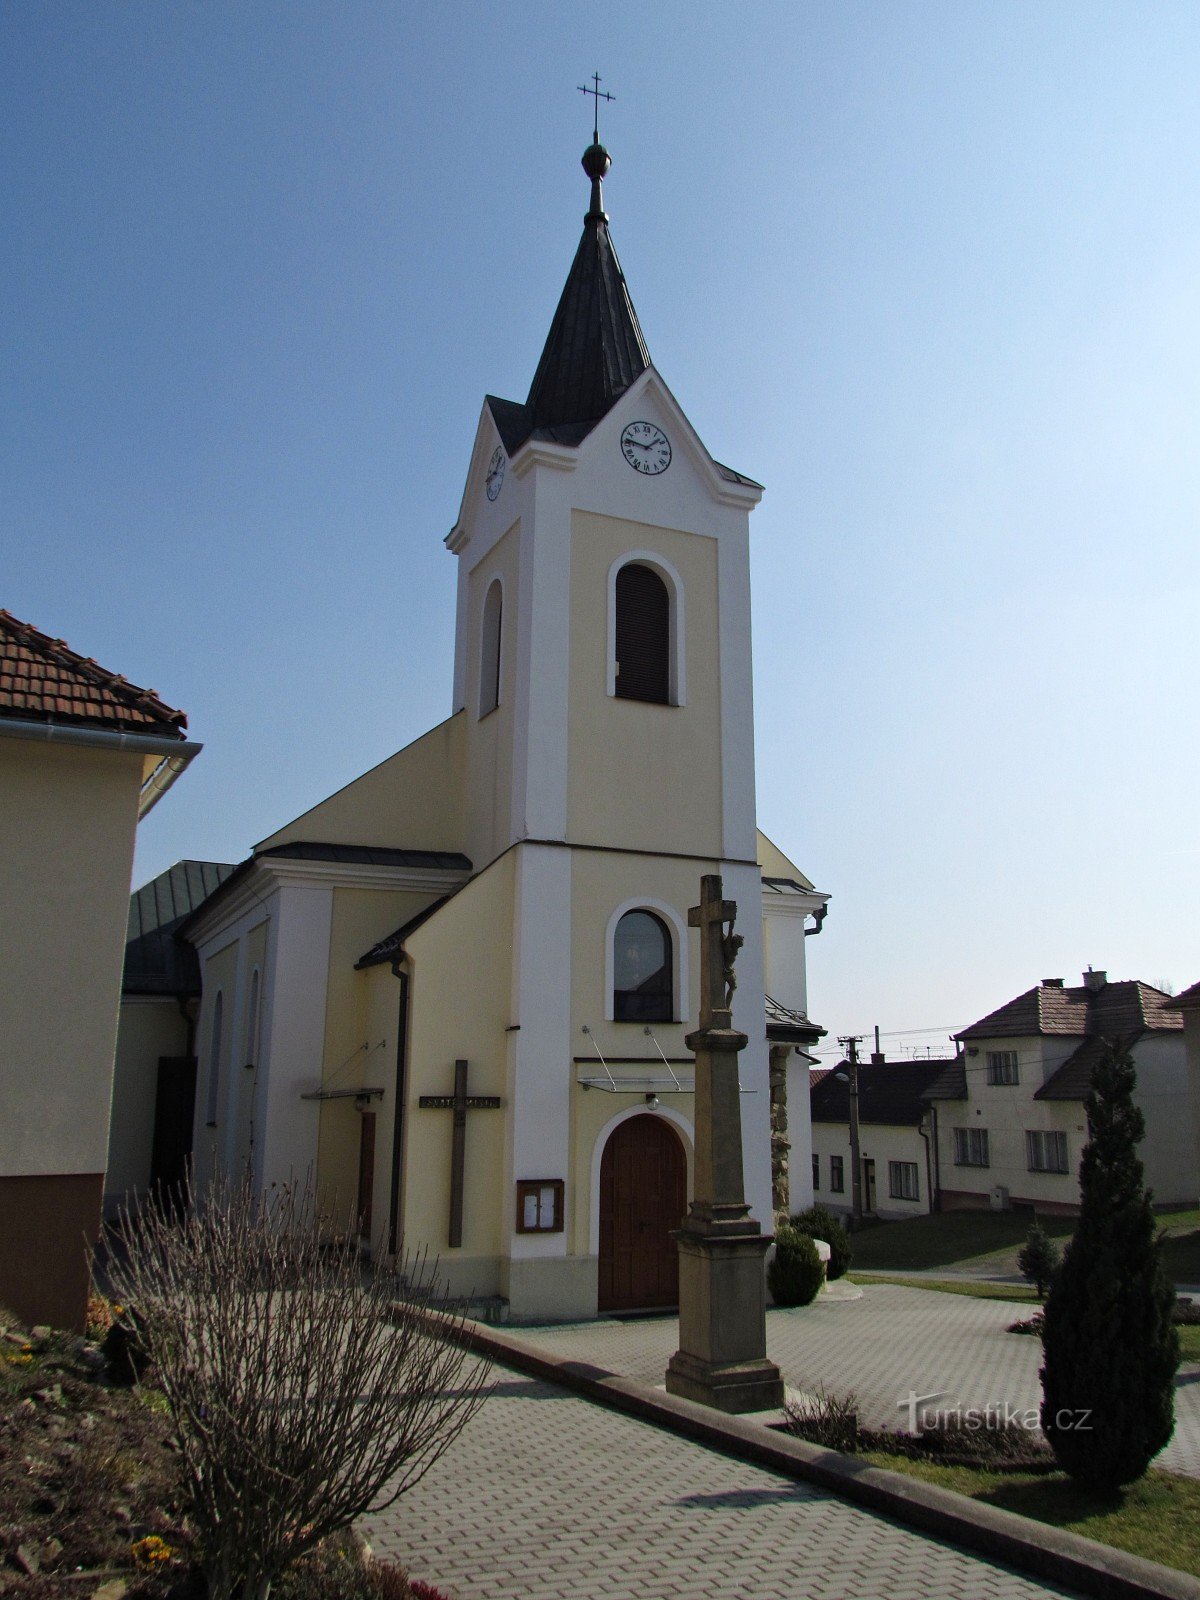 Лгота - церковь Святой Анны